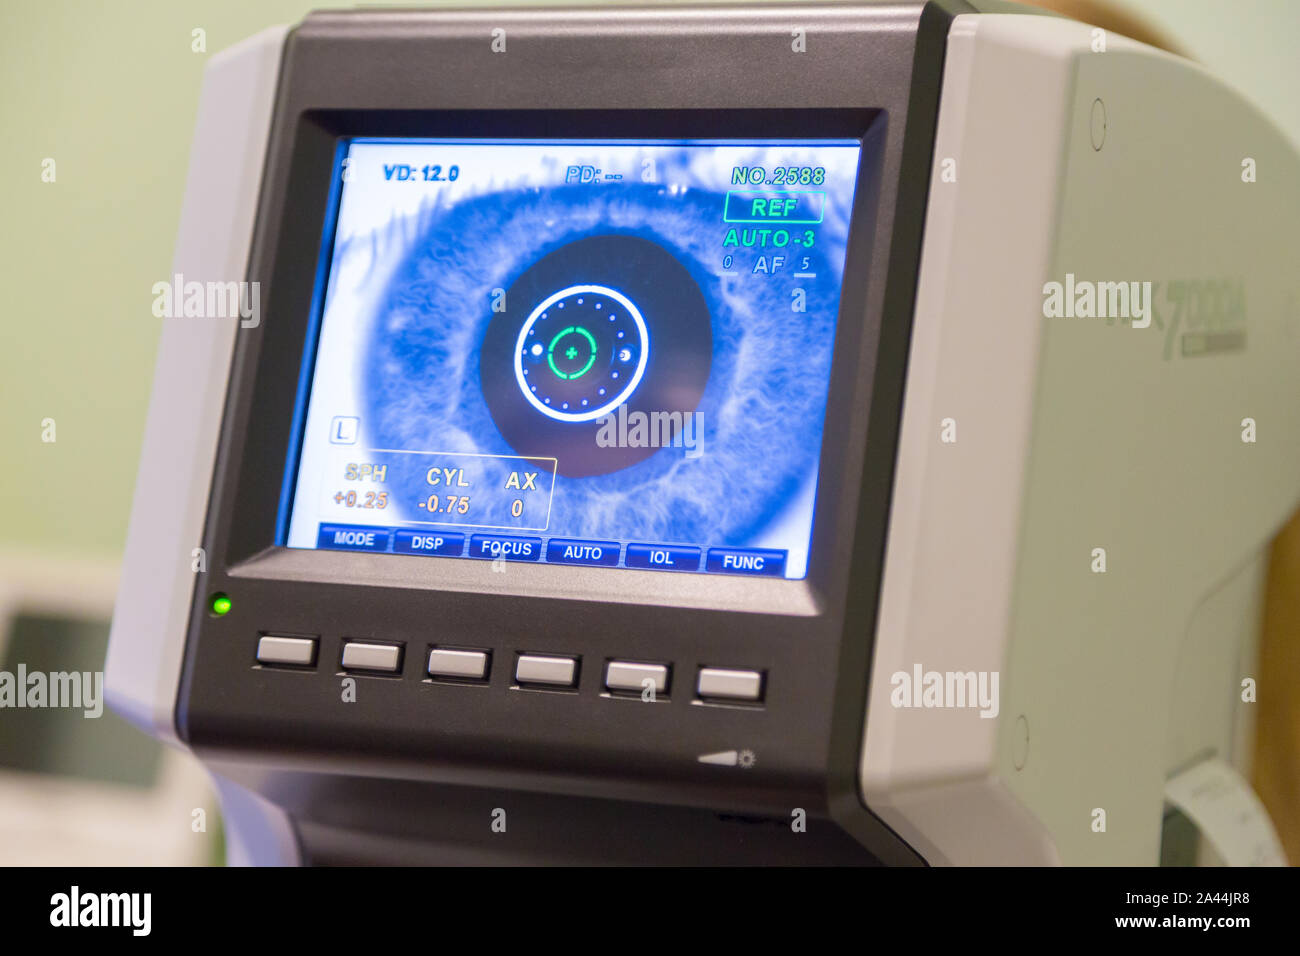 Monitor at optician Stock Photo